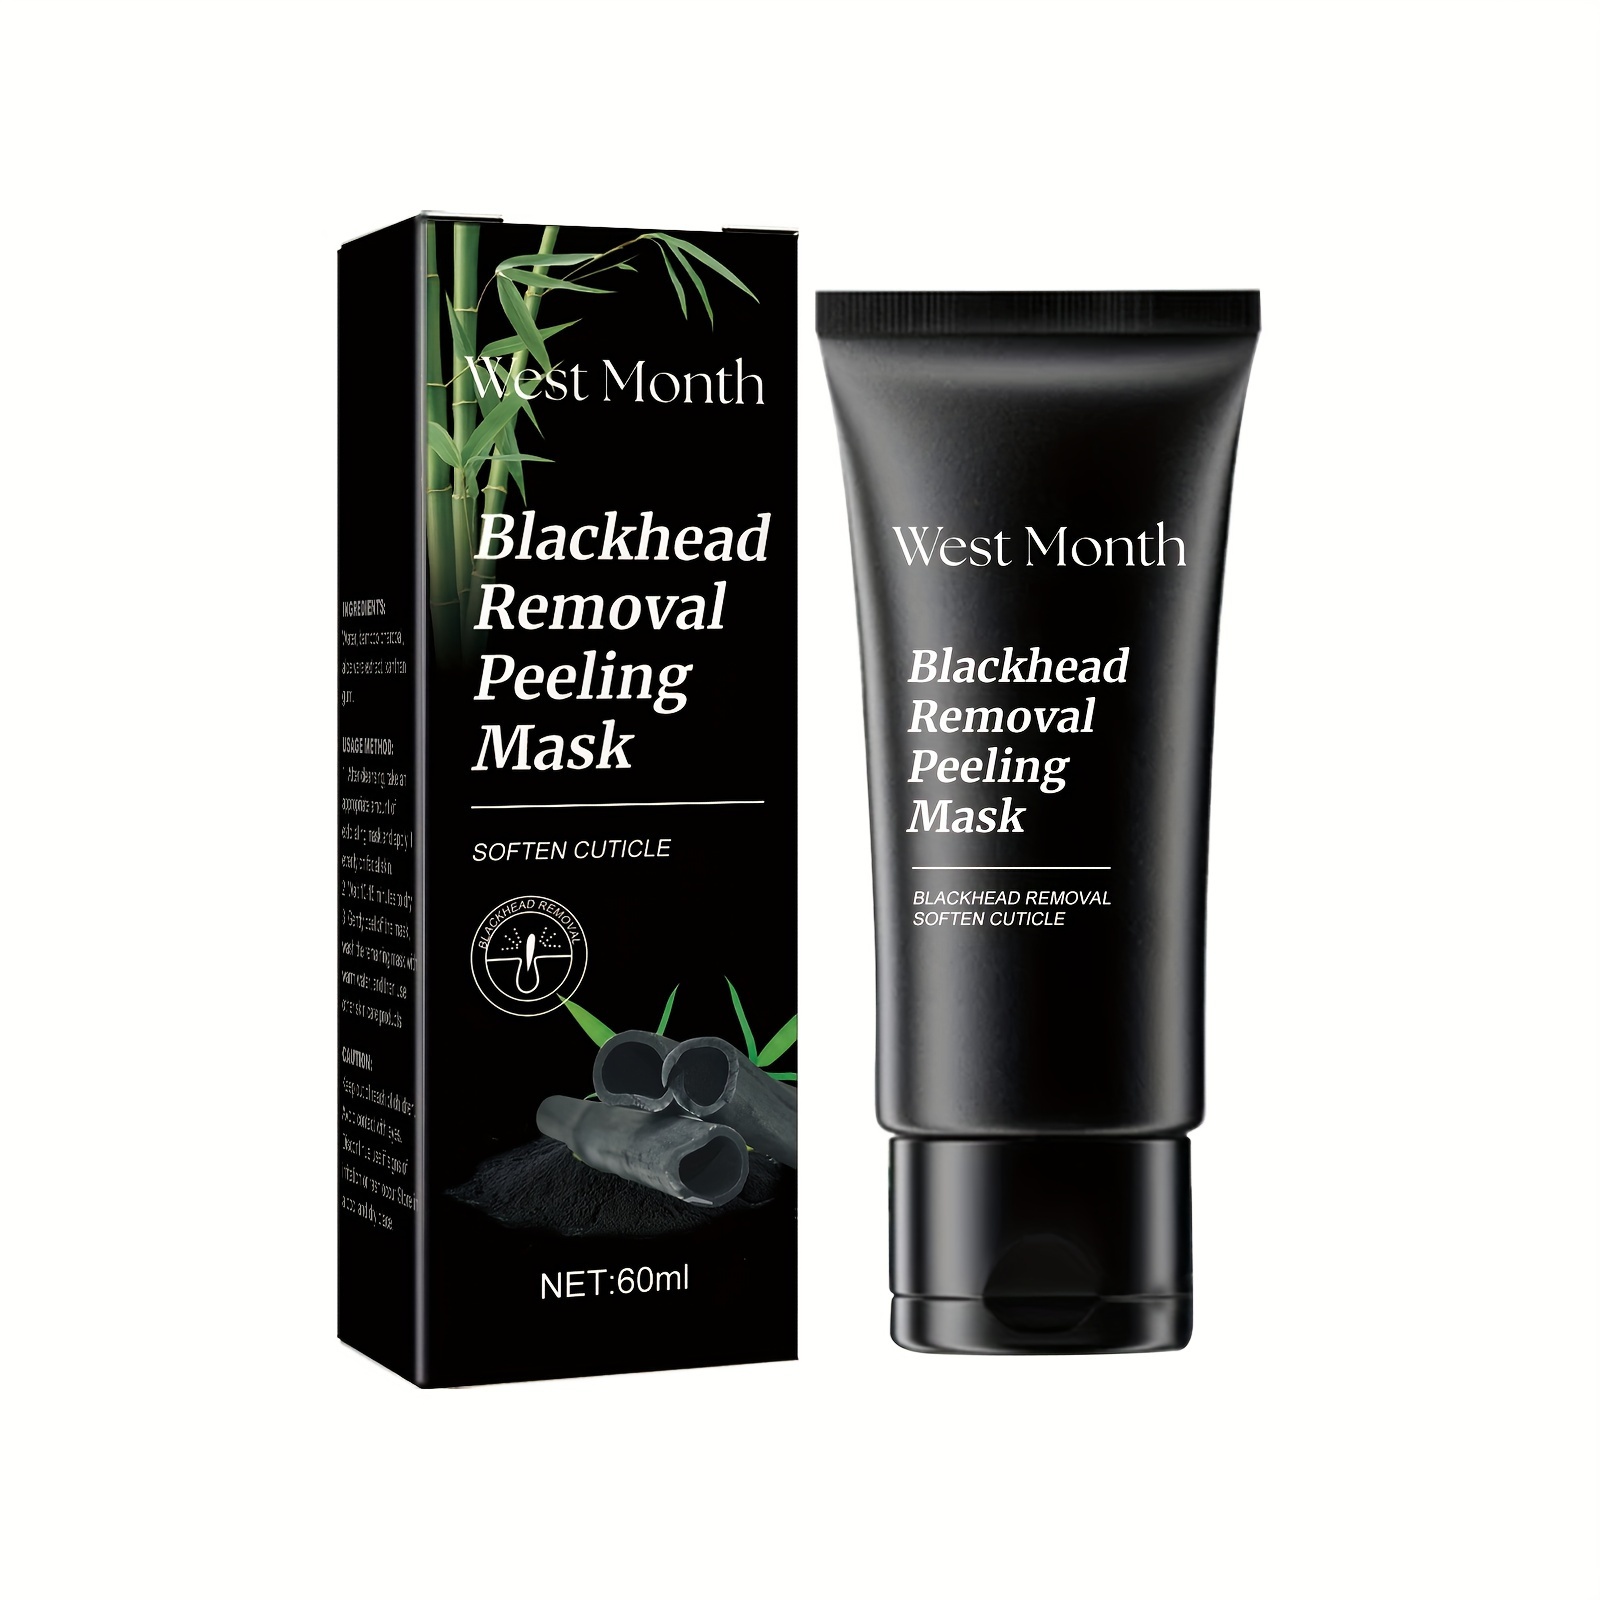 SHILLS Charcoal Black Mask, Blackhead Remover Mask, Charcoal Mask,  Blackhead Peel Off Mask, and Brush Kit